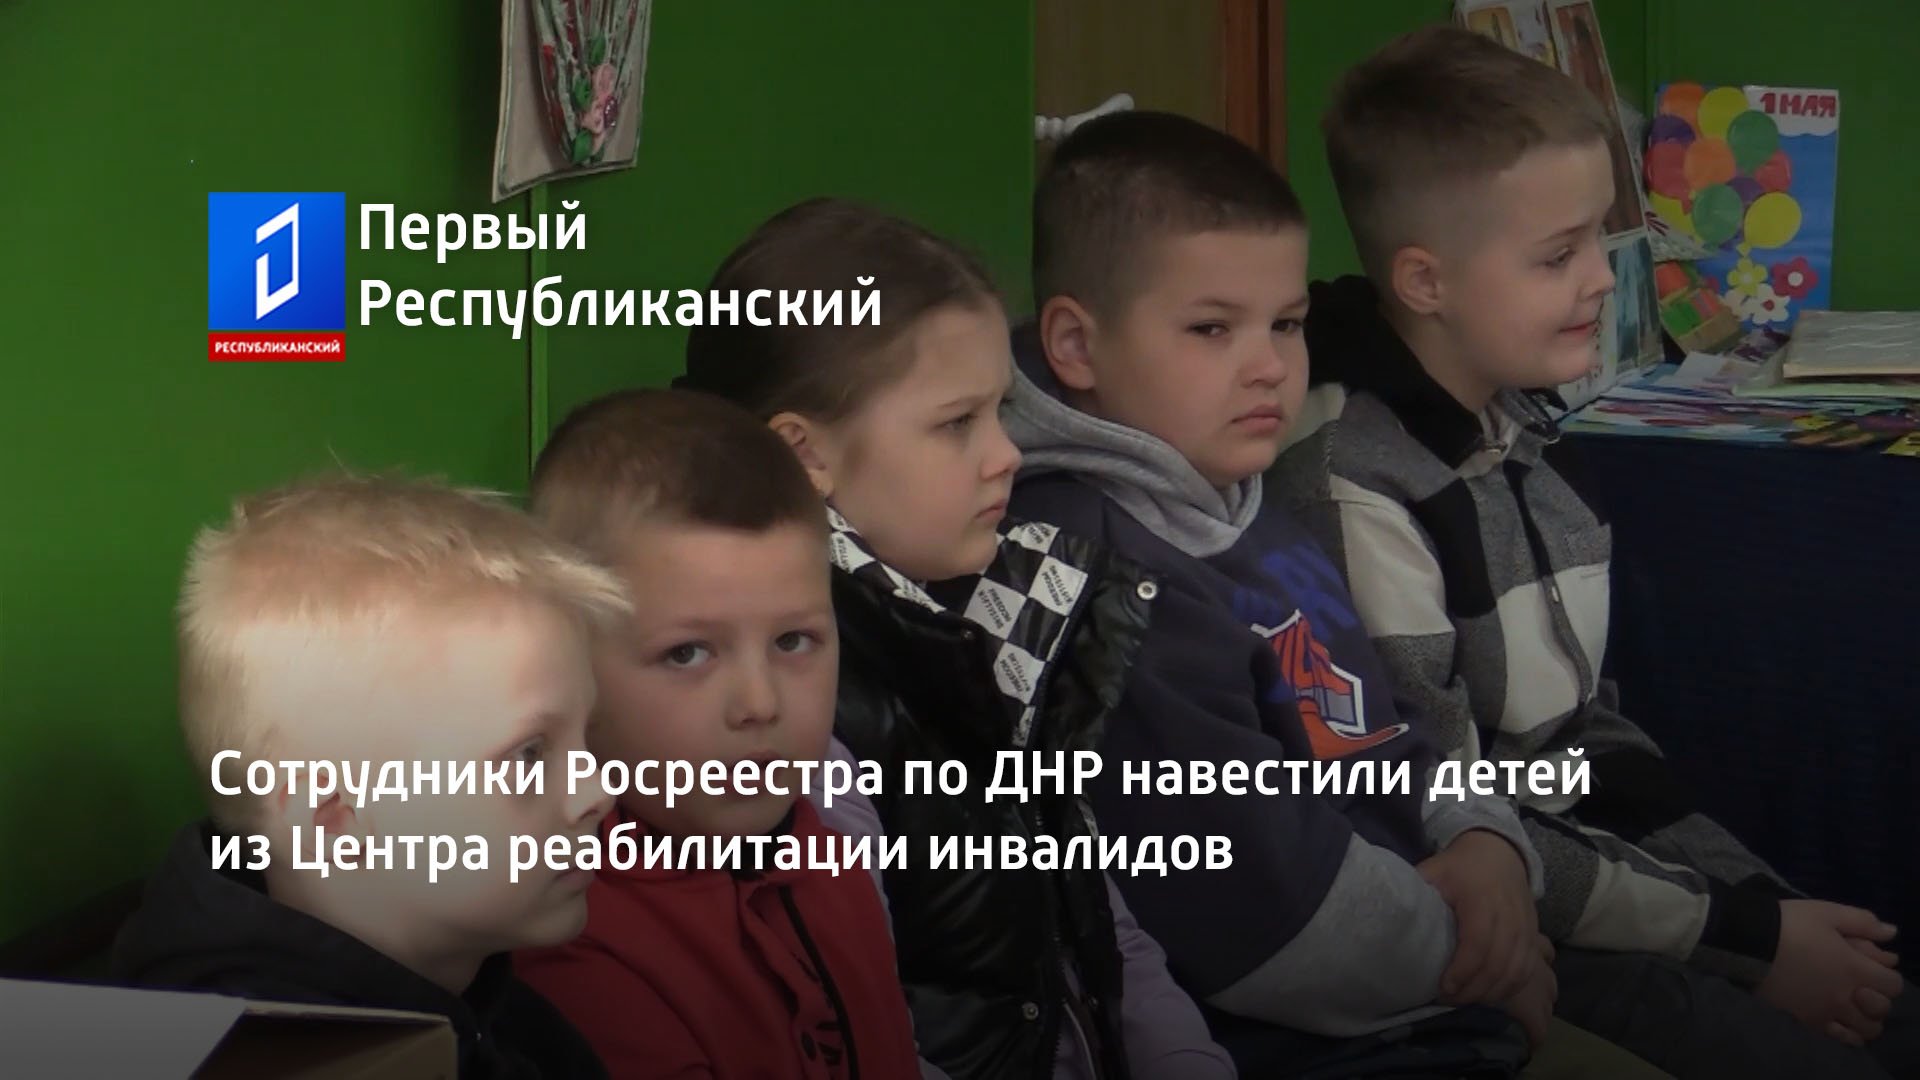 Сотрудники Росреестра по ДНР навестили детей из Центра реабилитации инвалидов